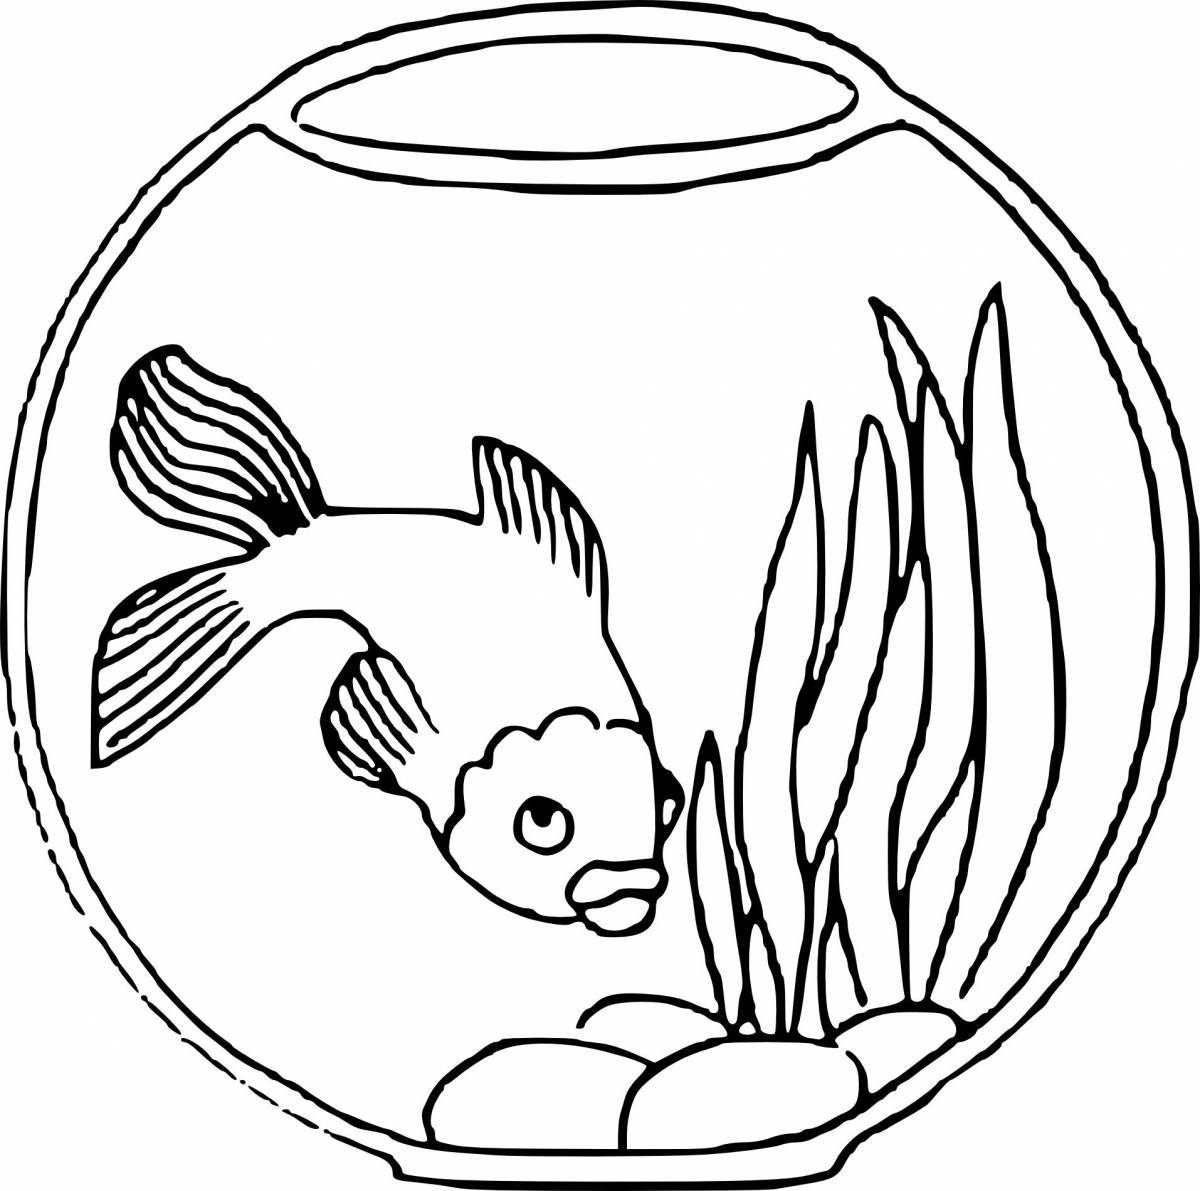 Учимся поэтапно рисовать аквариум с золотой рыбкой (+ раскраска)